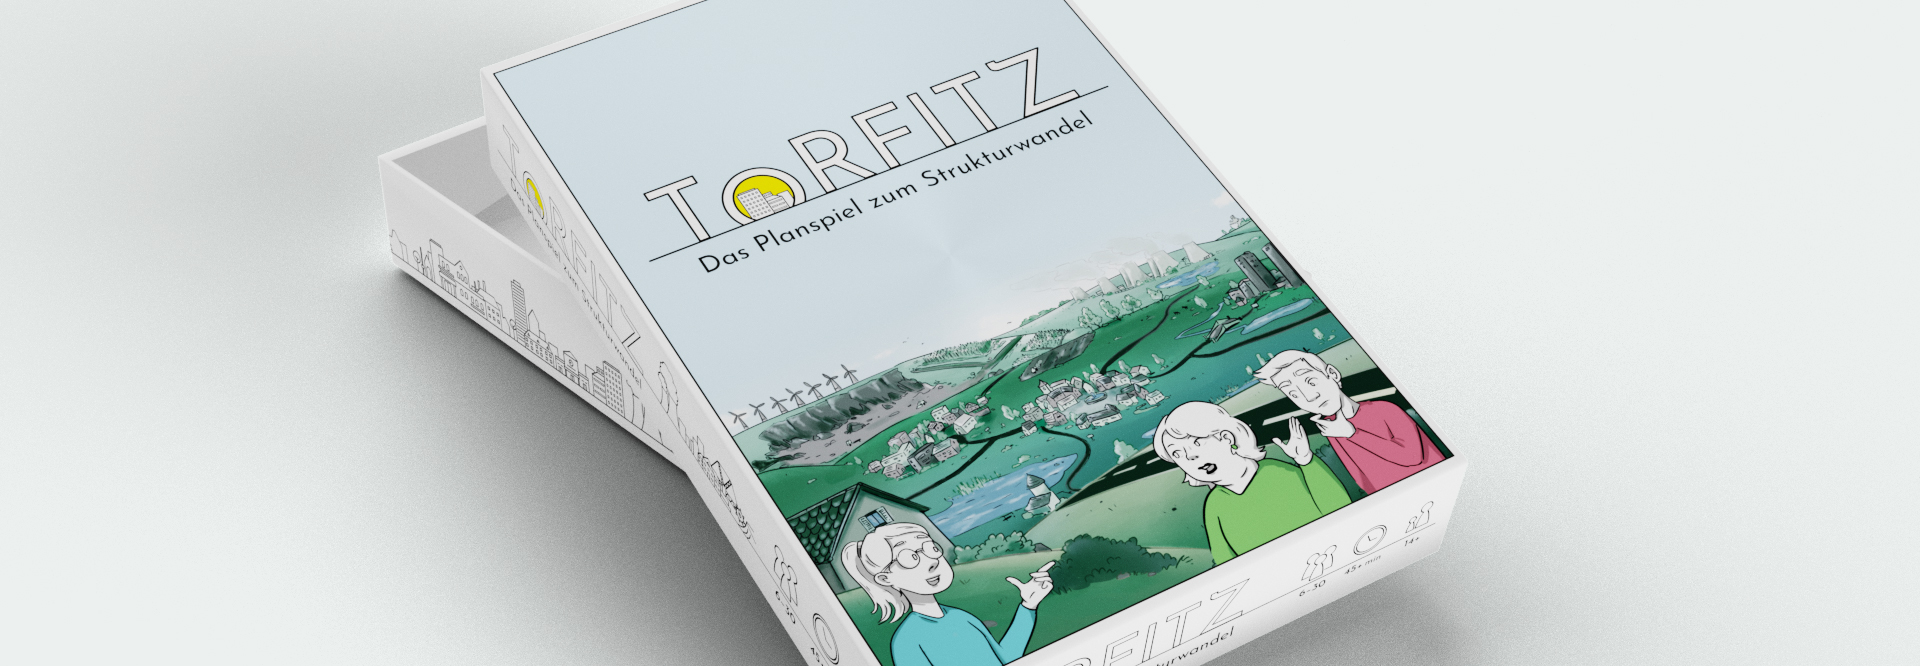 Torfitz-Planspiel-zu-Strukturwandel-PlayingHistory-Projekte-Schachtel_MockupSchachtel_schmal